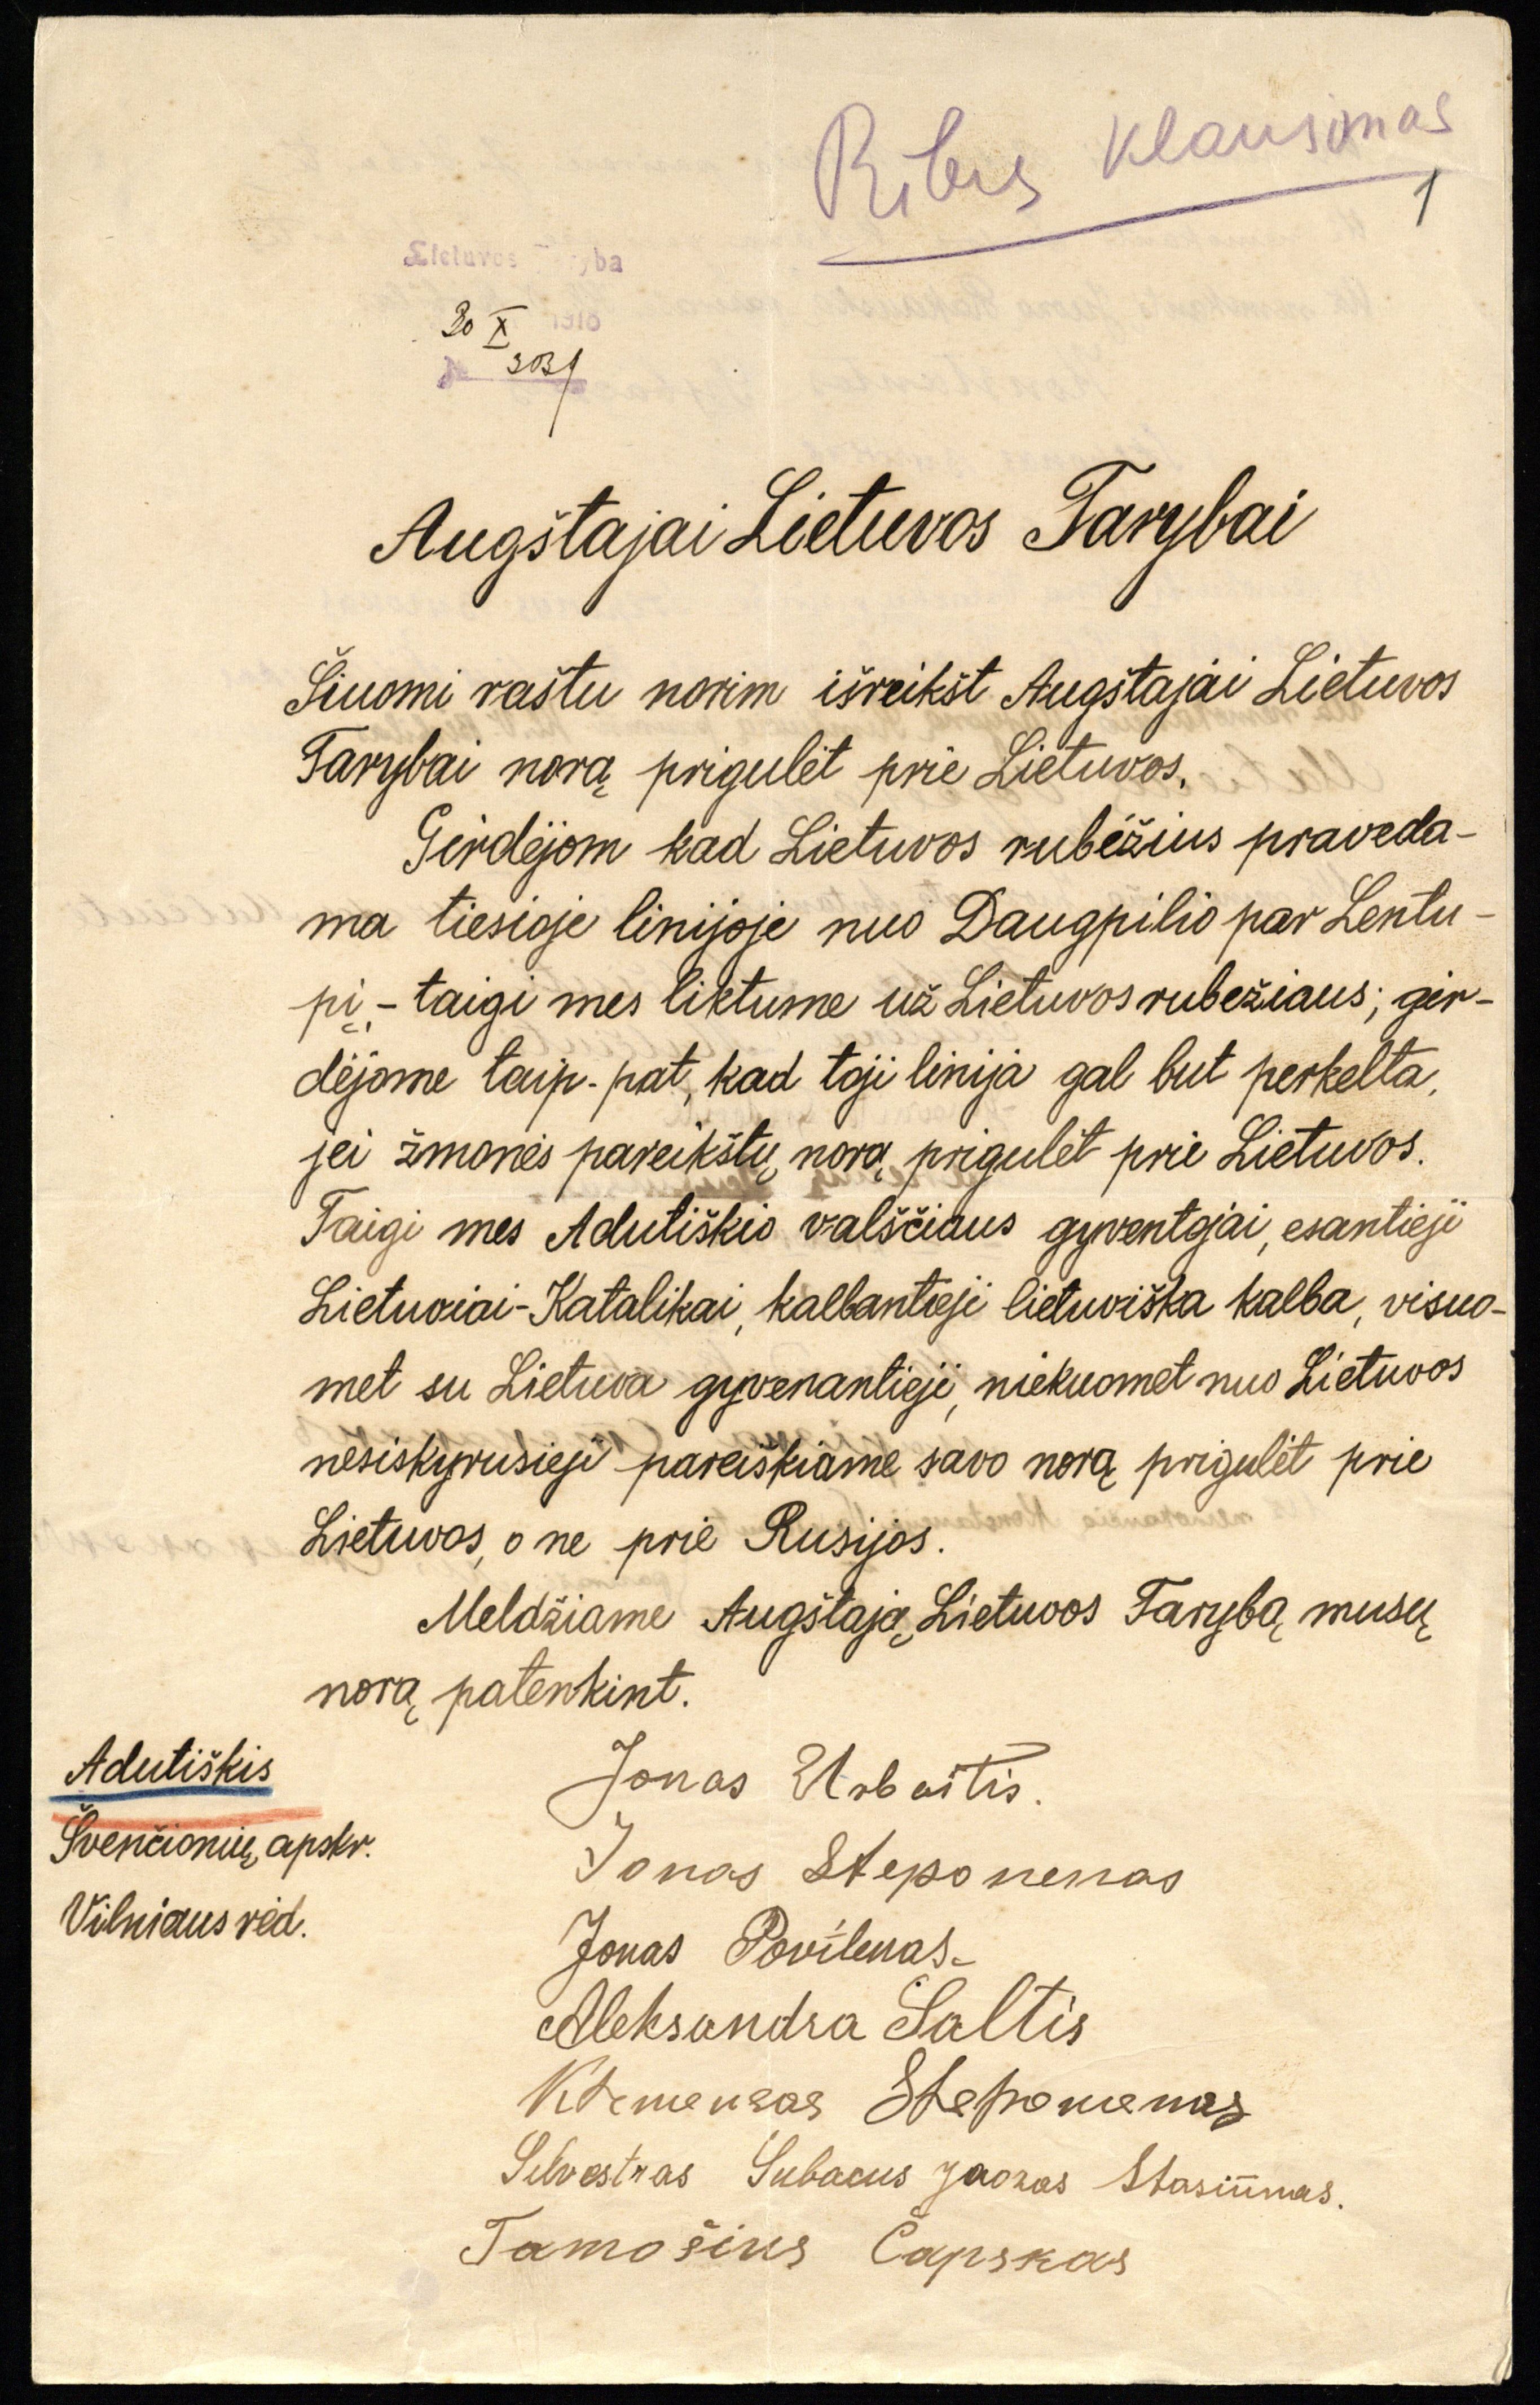 Adutiškio gyventojų prašymas, adresuotas Lietuvos Tarybai, dėl jų krašto priskyrimo Lietuvai. Raštas gautas 1918 m. spalio 30 d.